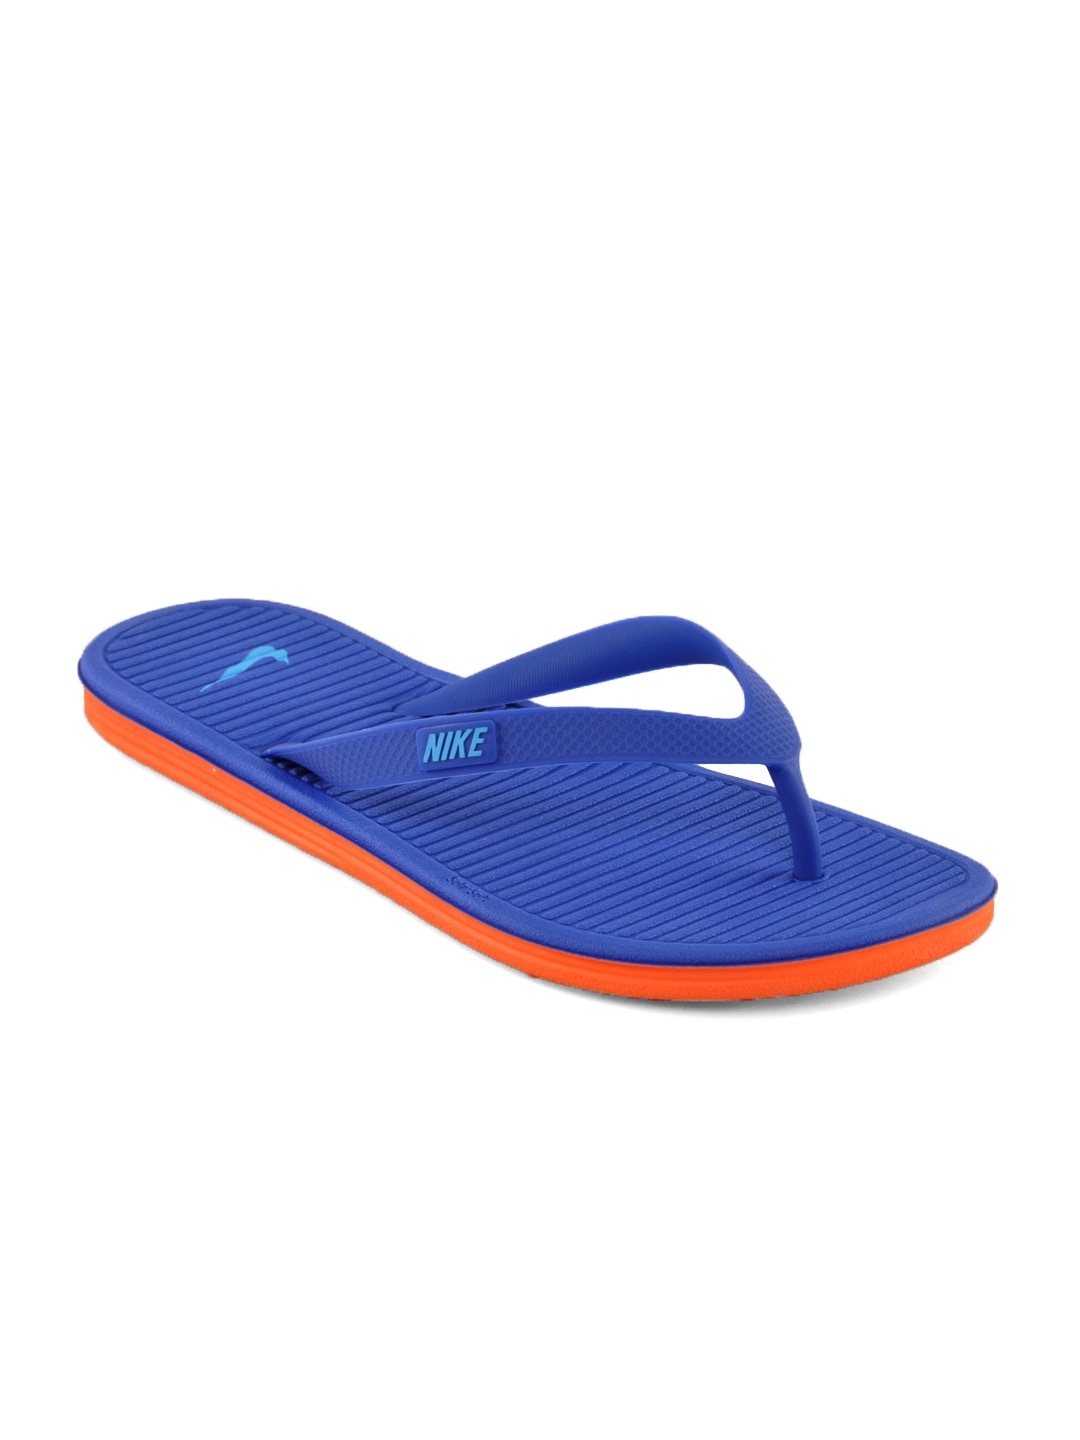 Nike Unisex Solarsoft Thong Blue Flip Flops